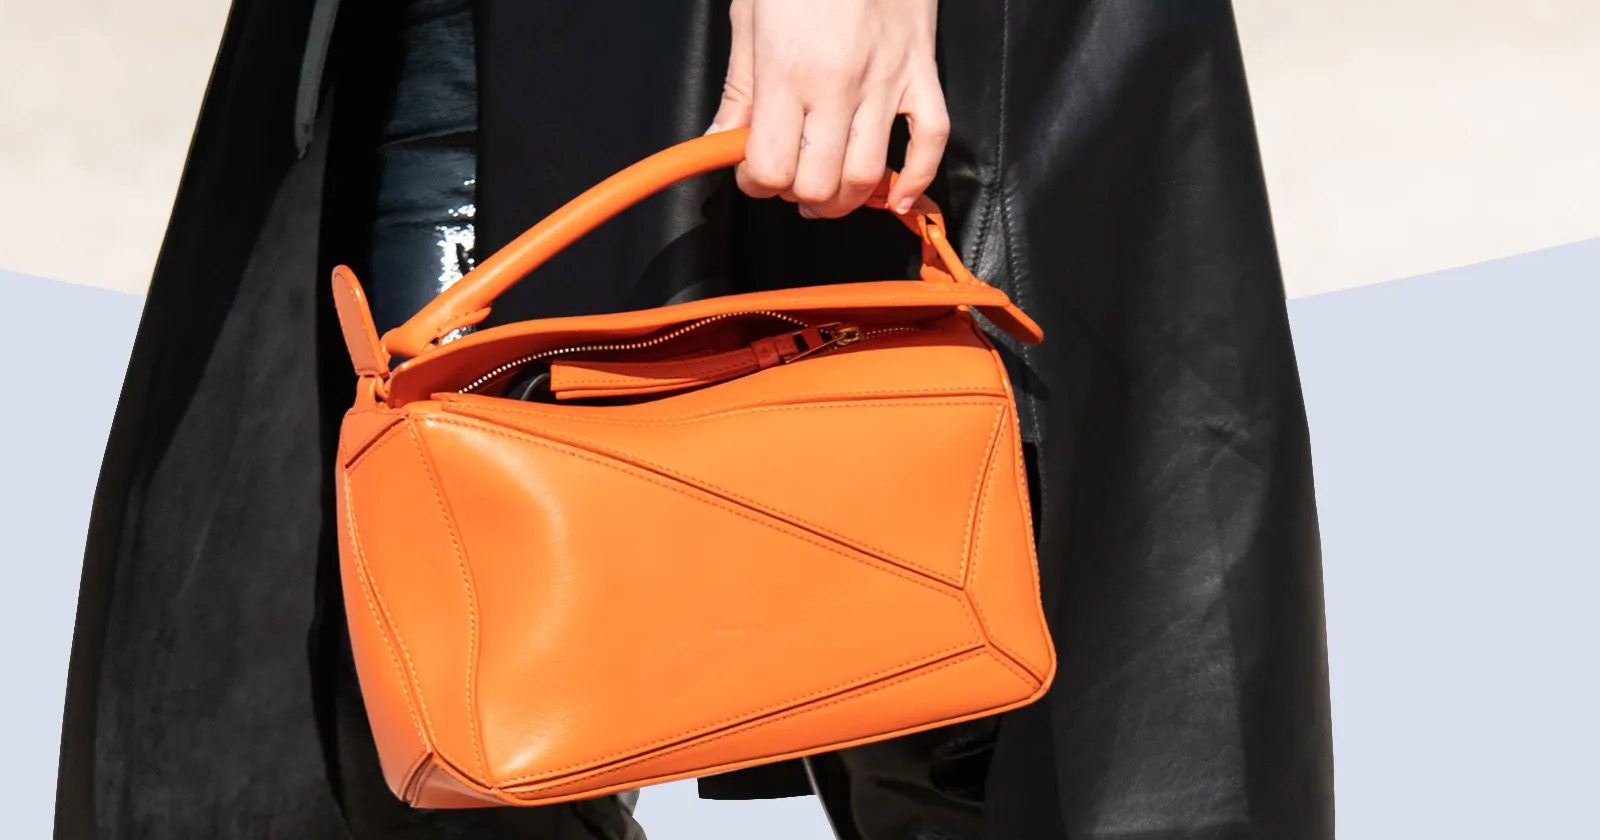 Sebelum beli tas branded, ini 6 hal penting yang harus kamu perha